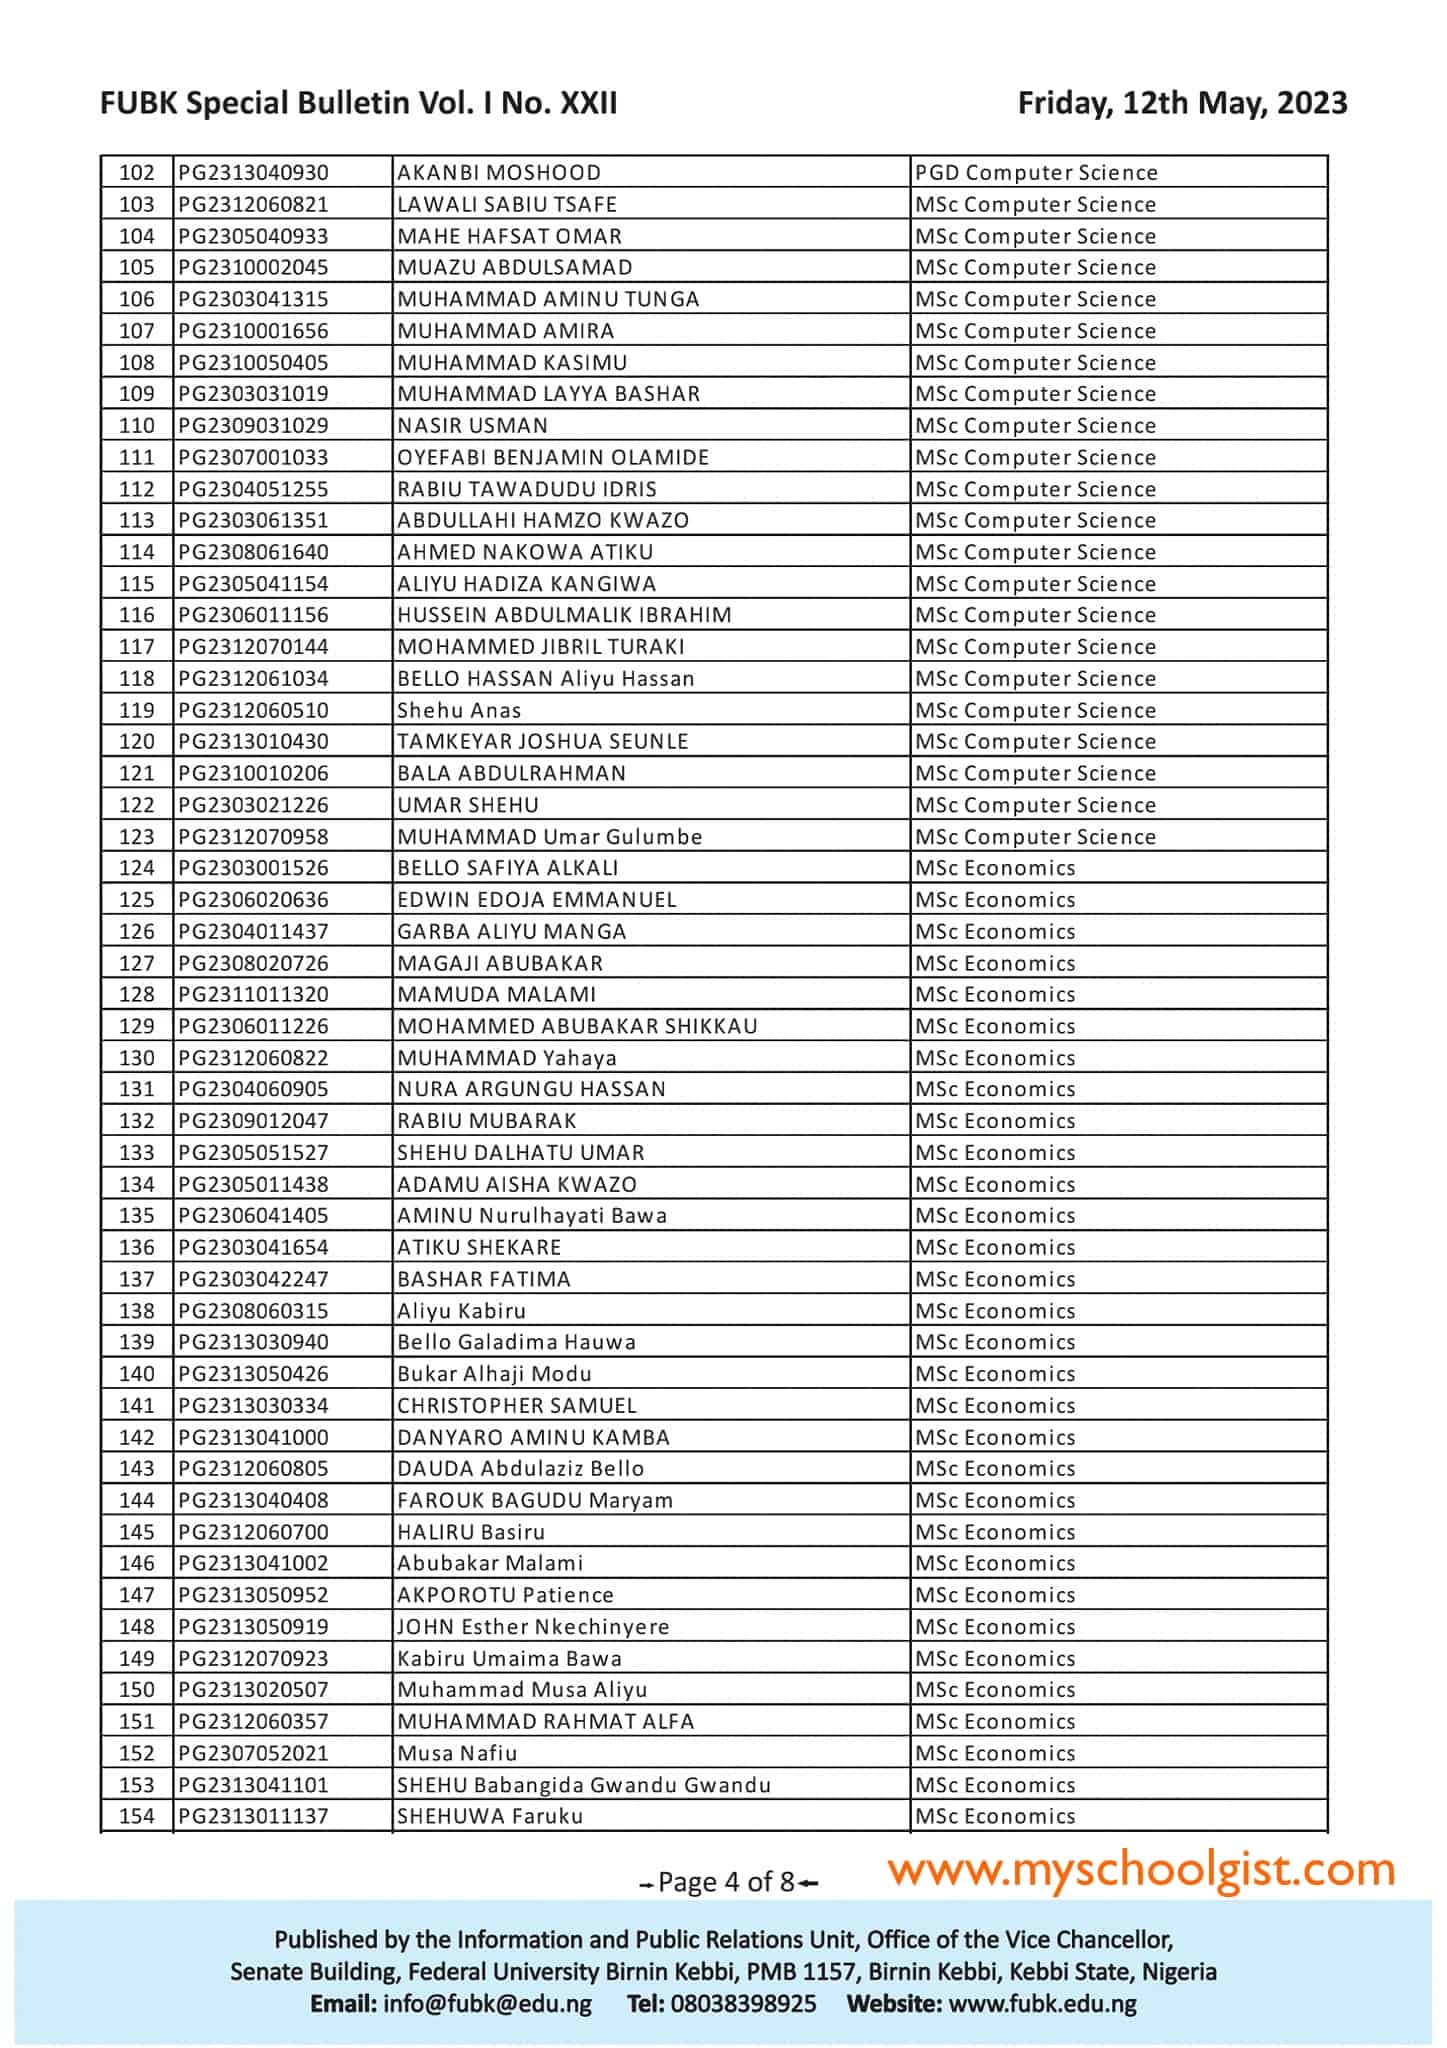 FUBK Postgraduate Admission List 2022-2023